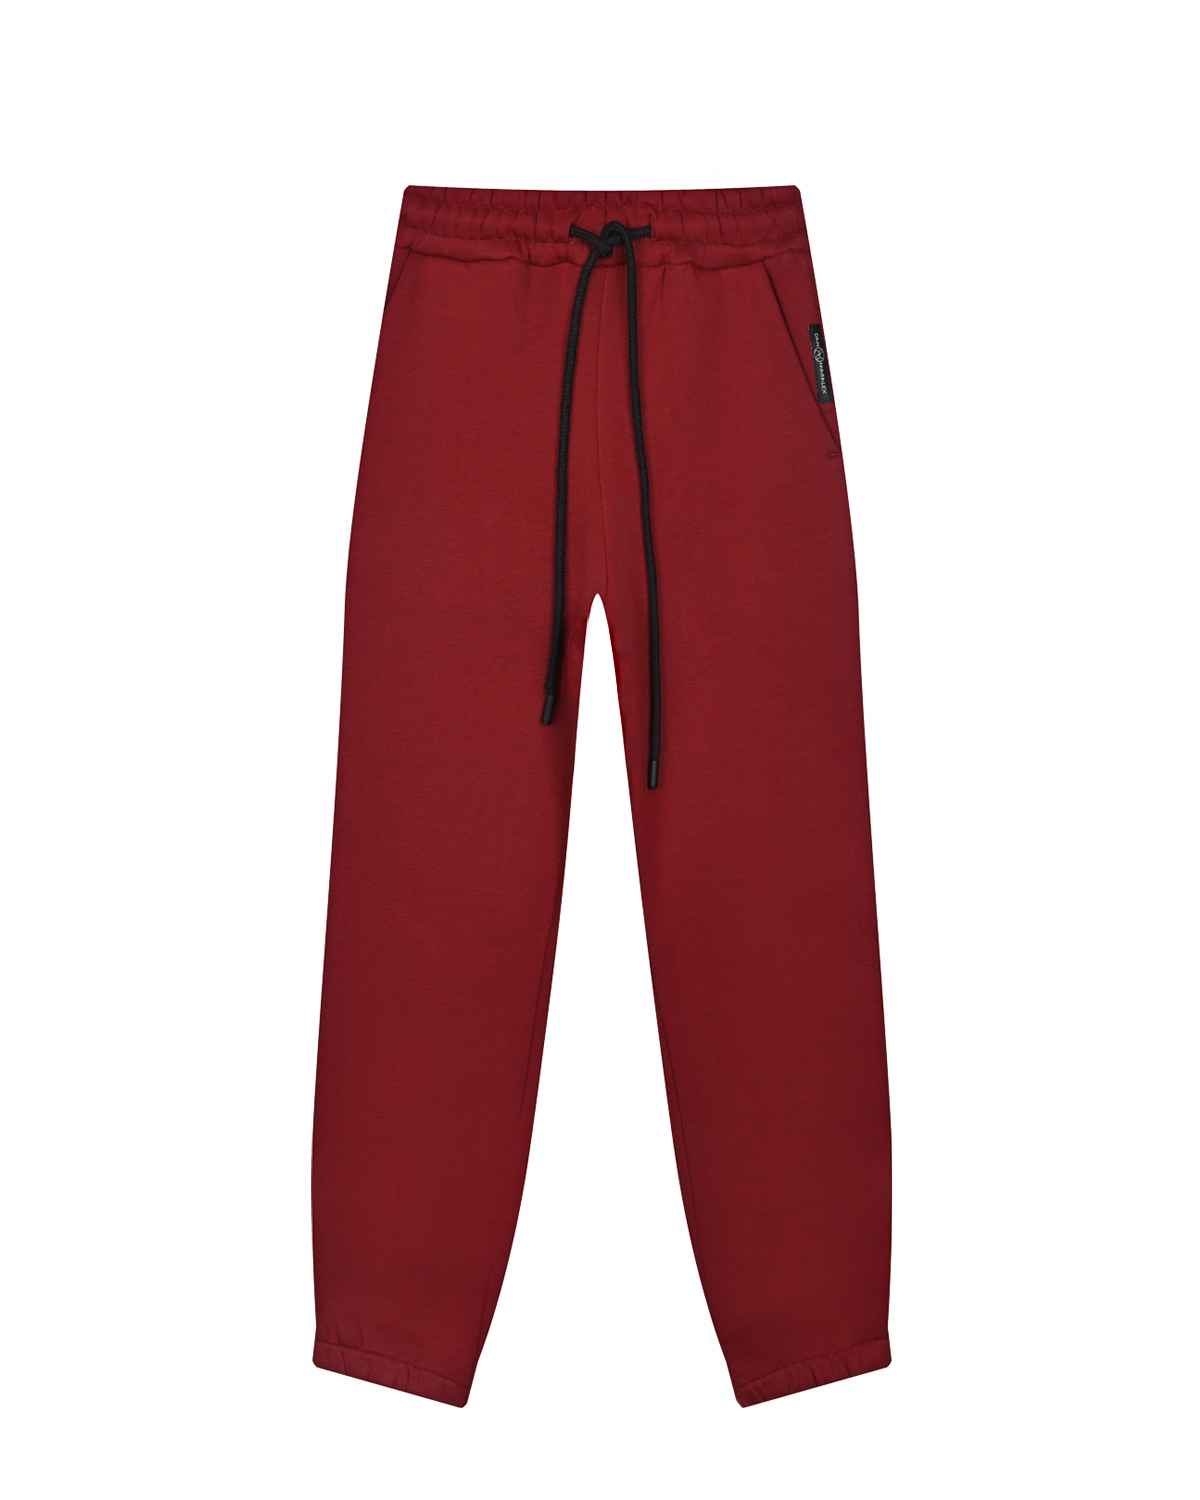 Бордовые спортивные брюки Dan Maralex детские, размер 164, цвет бордовый - фото 1